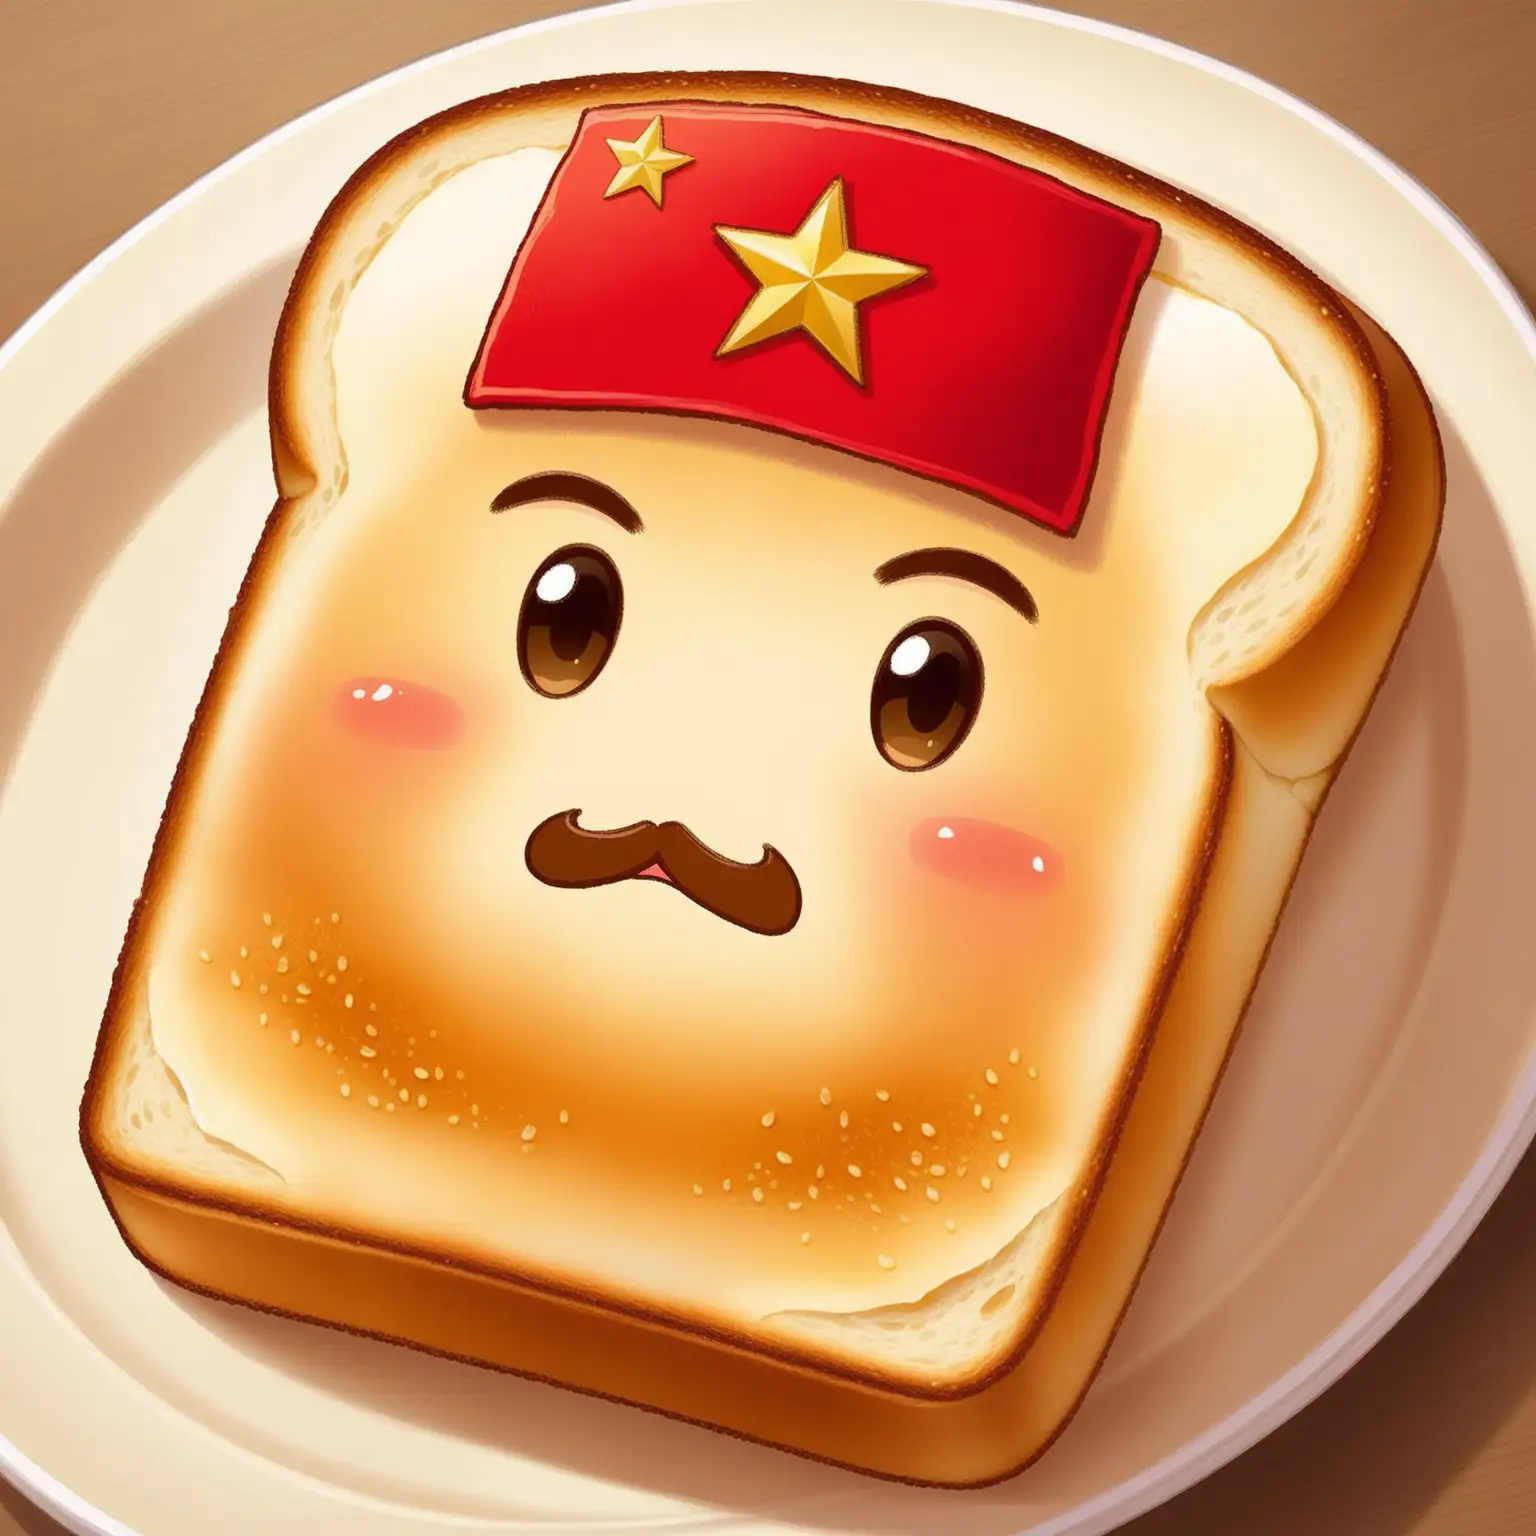 Very cute communist toast